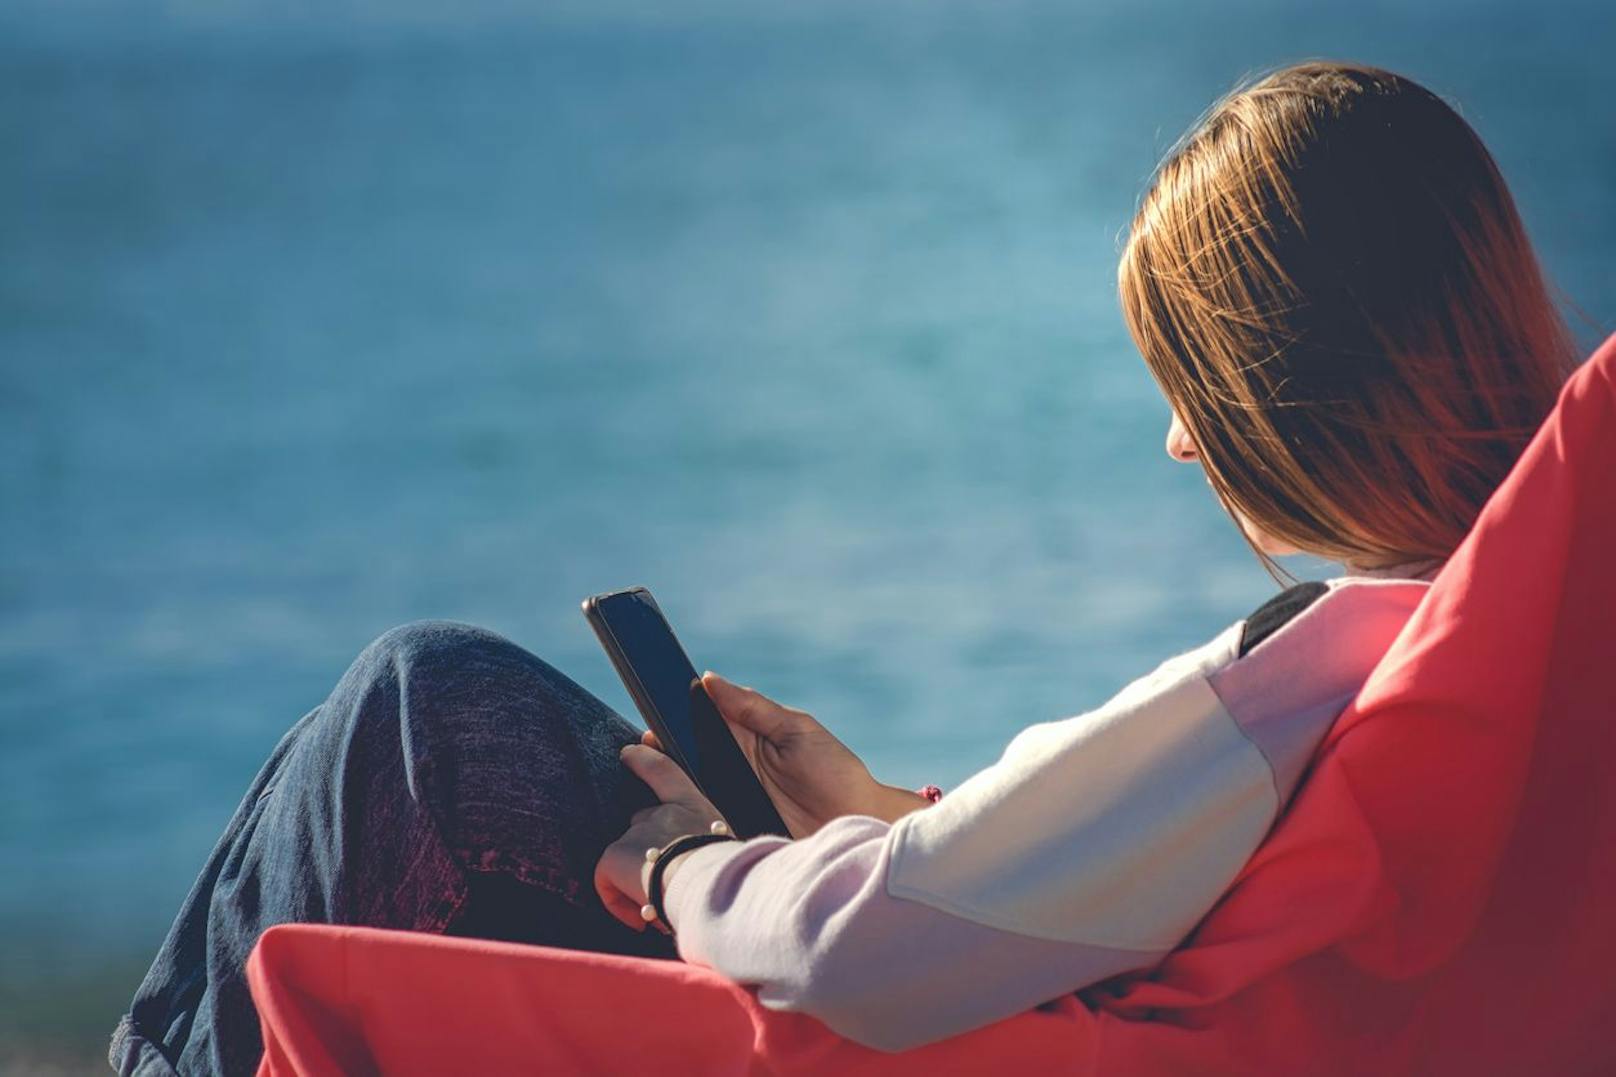 Die 20-jährige Frau verbrachte einige Stunden am Strand und hat auf ihrem Mobiltelefon gelesen.